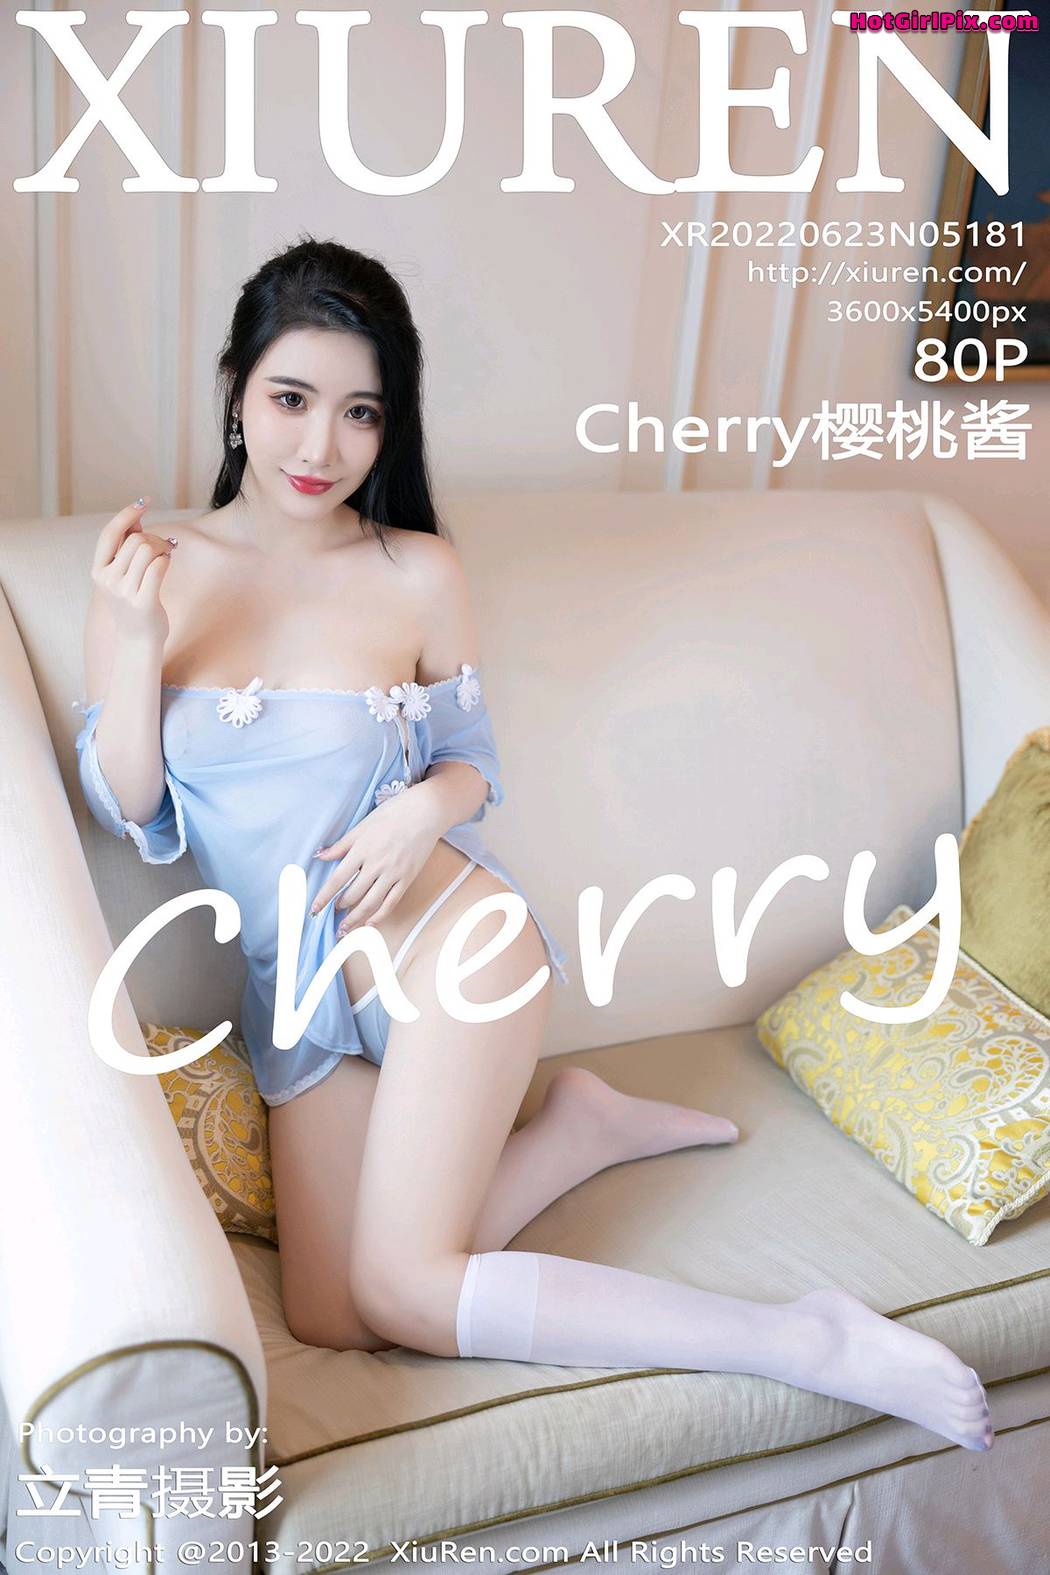 [XIUREN] No.5181 Cherry樱桃酱 Cover Photo